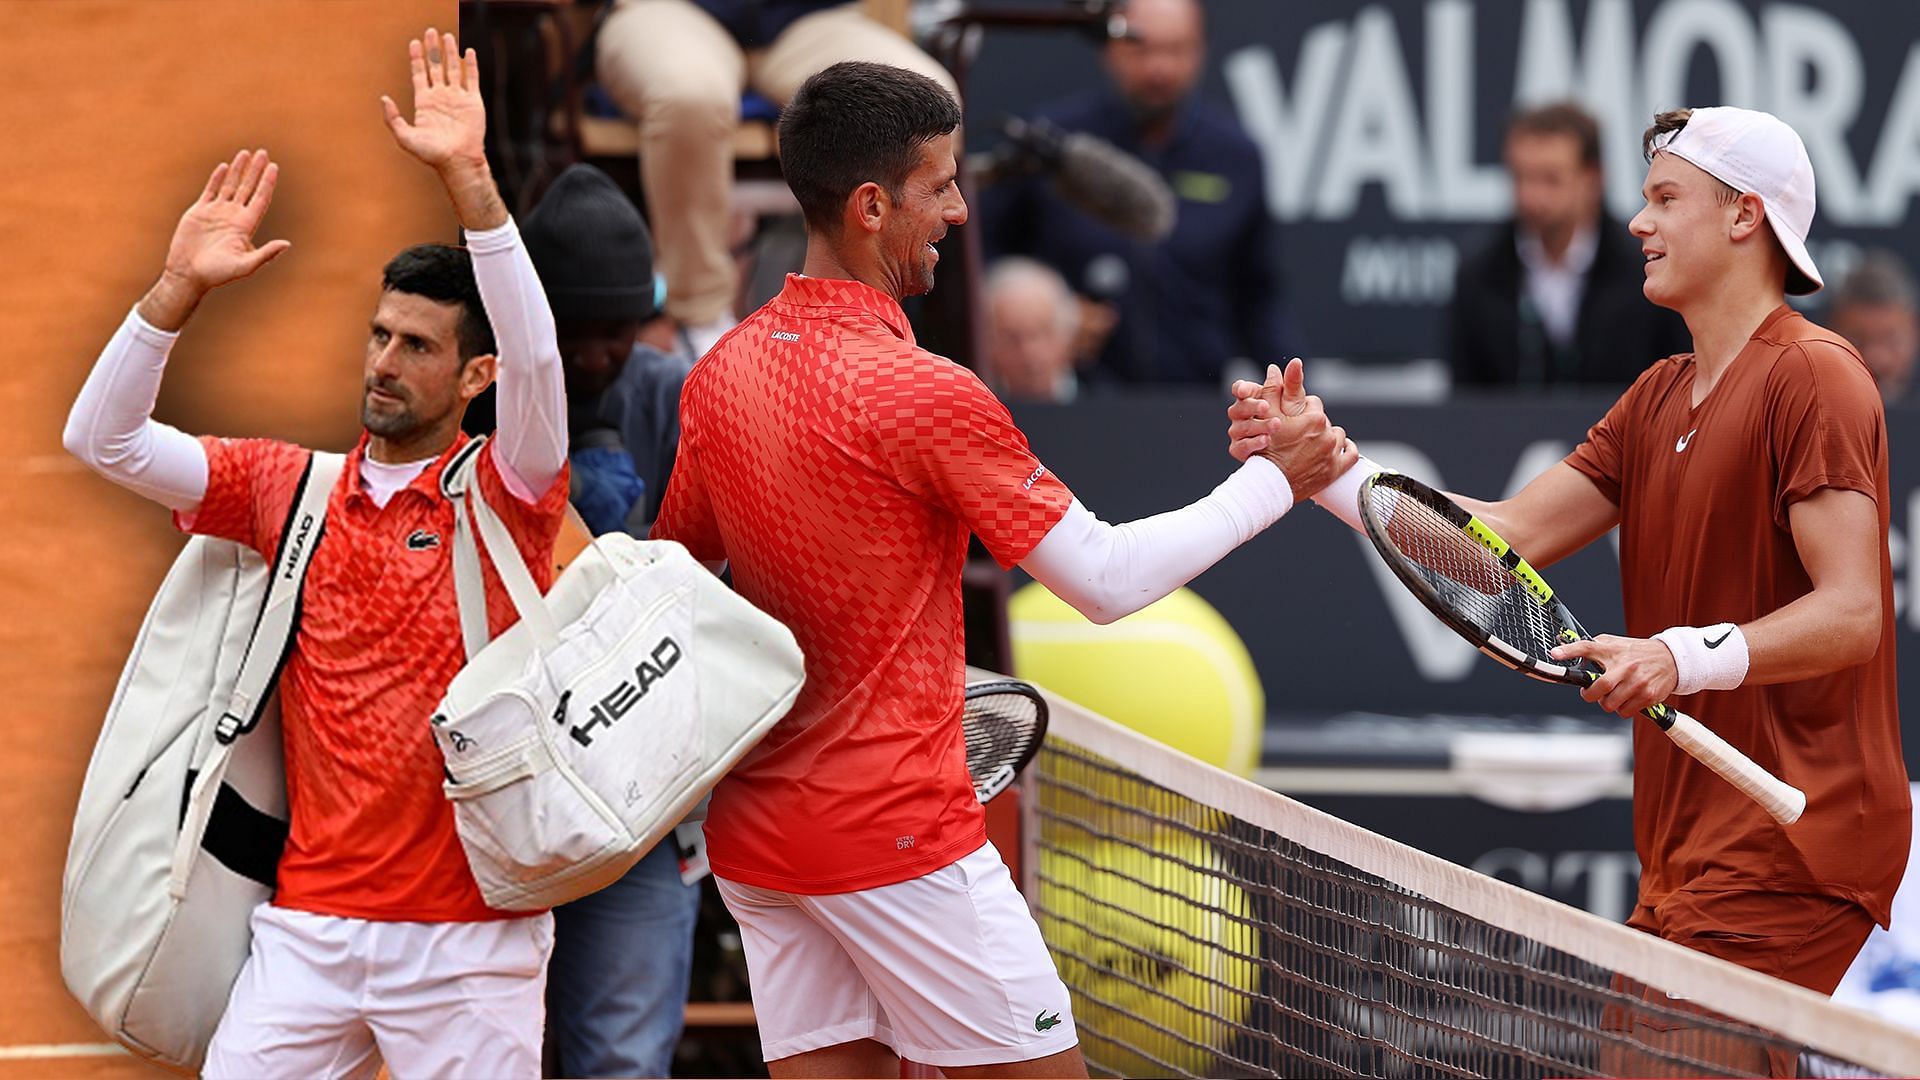 Novak Djokovic appears graceful in defeat